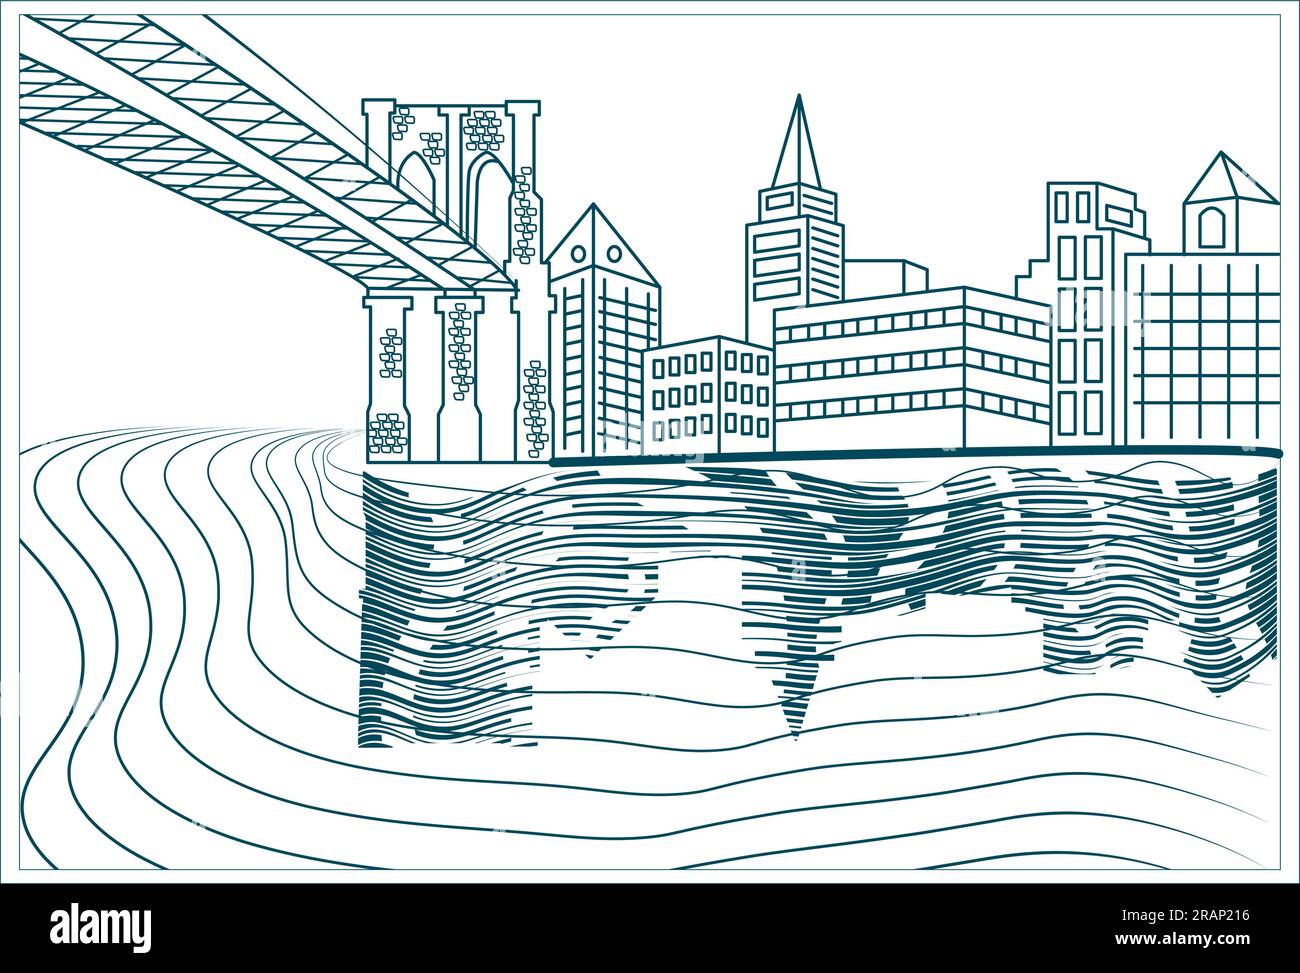 Formen Sie die Landschaft des städtischen Gebiets in Flussnähe mit Silhouetten von Gebäuden und Brücken auf transparentem Hintergrund Stock Vektor